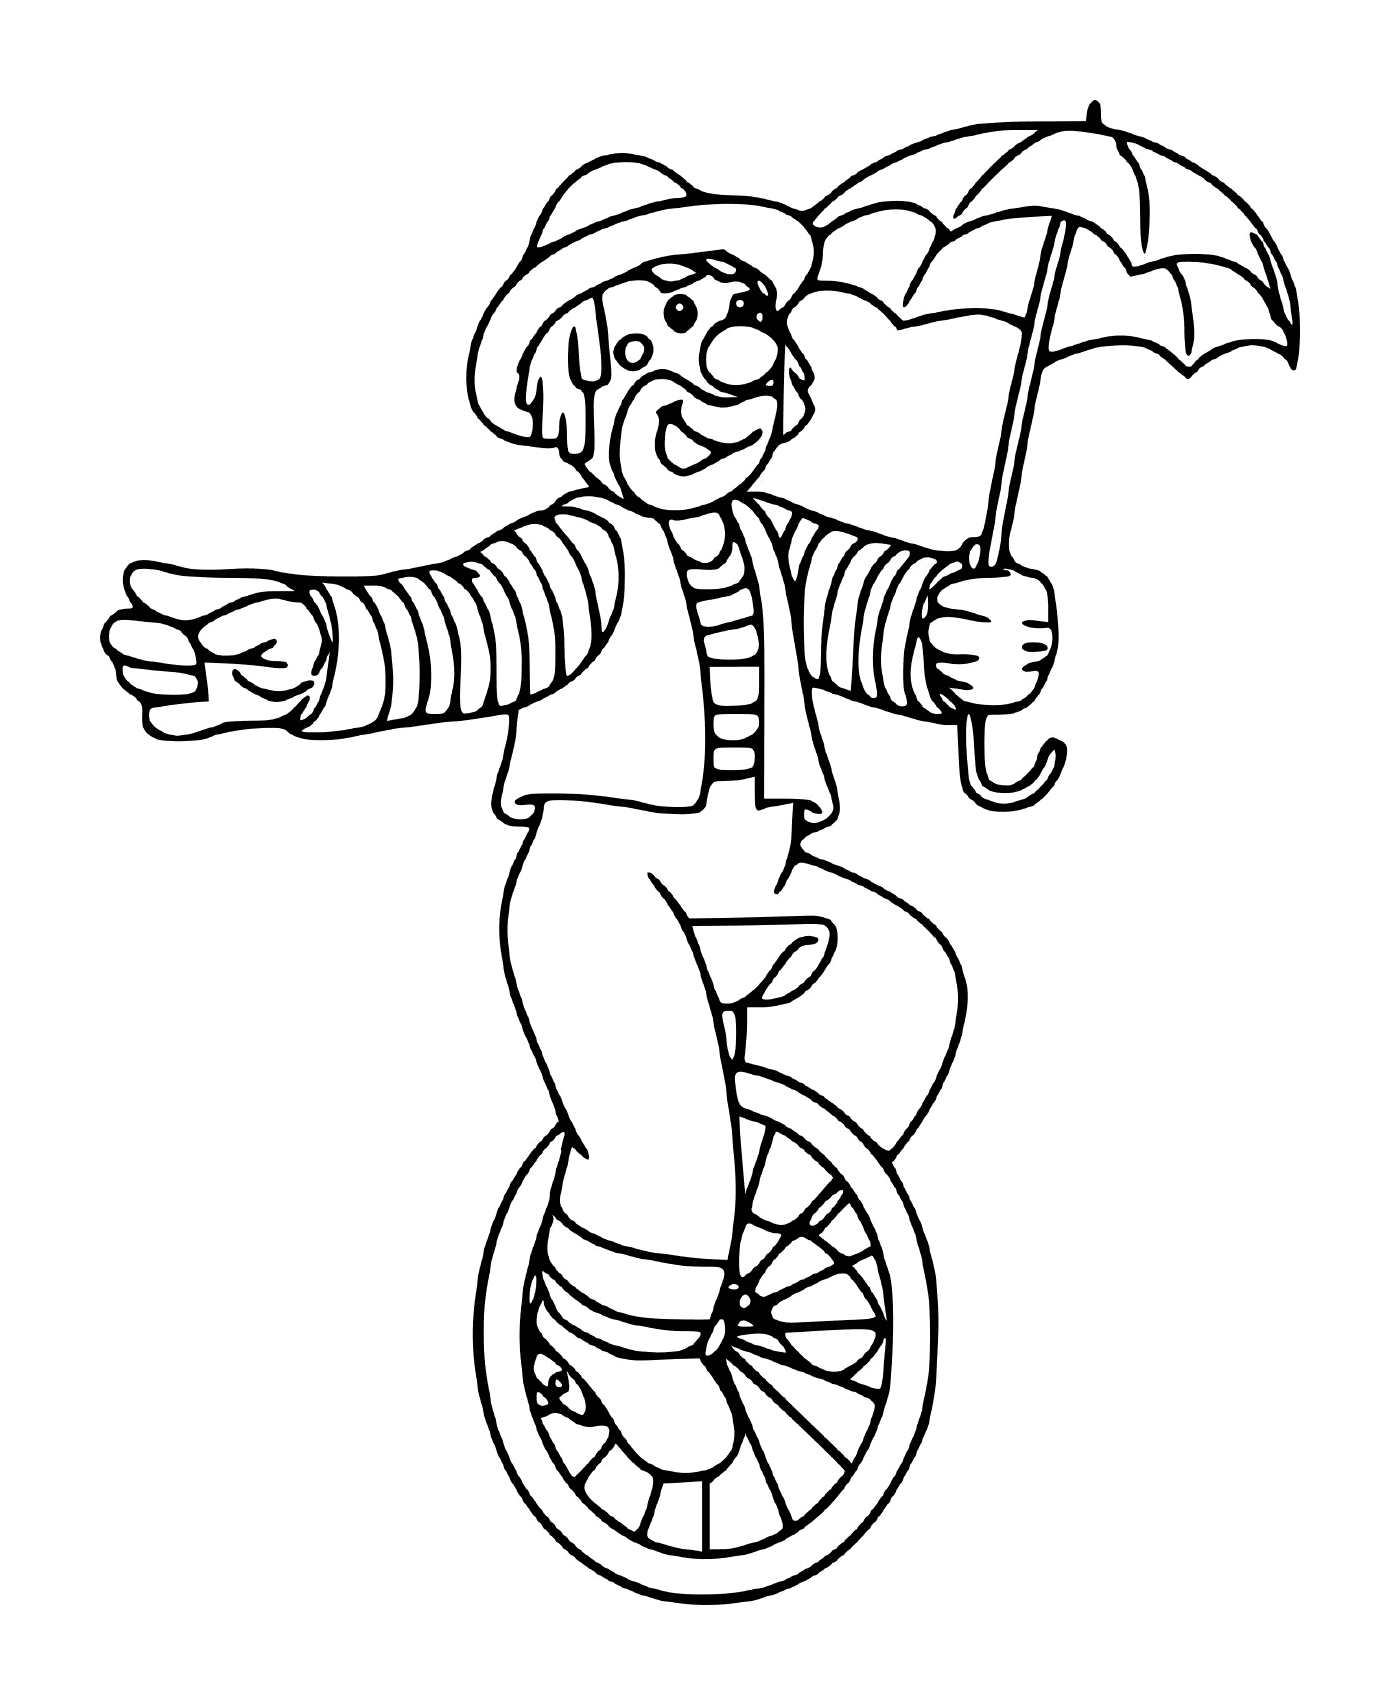  Zirkus Clown auf einem Rad mit einem Regenschirm ausbalanciert 